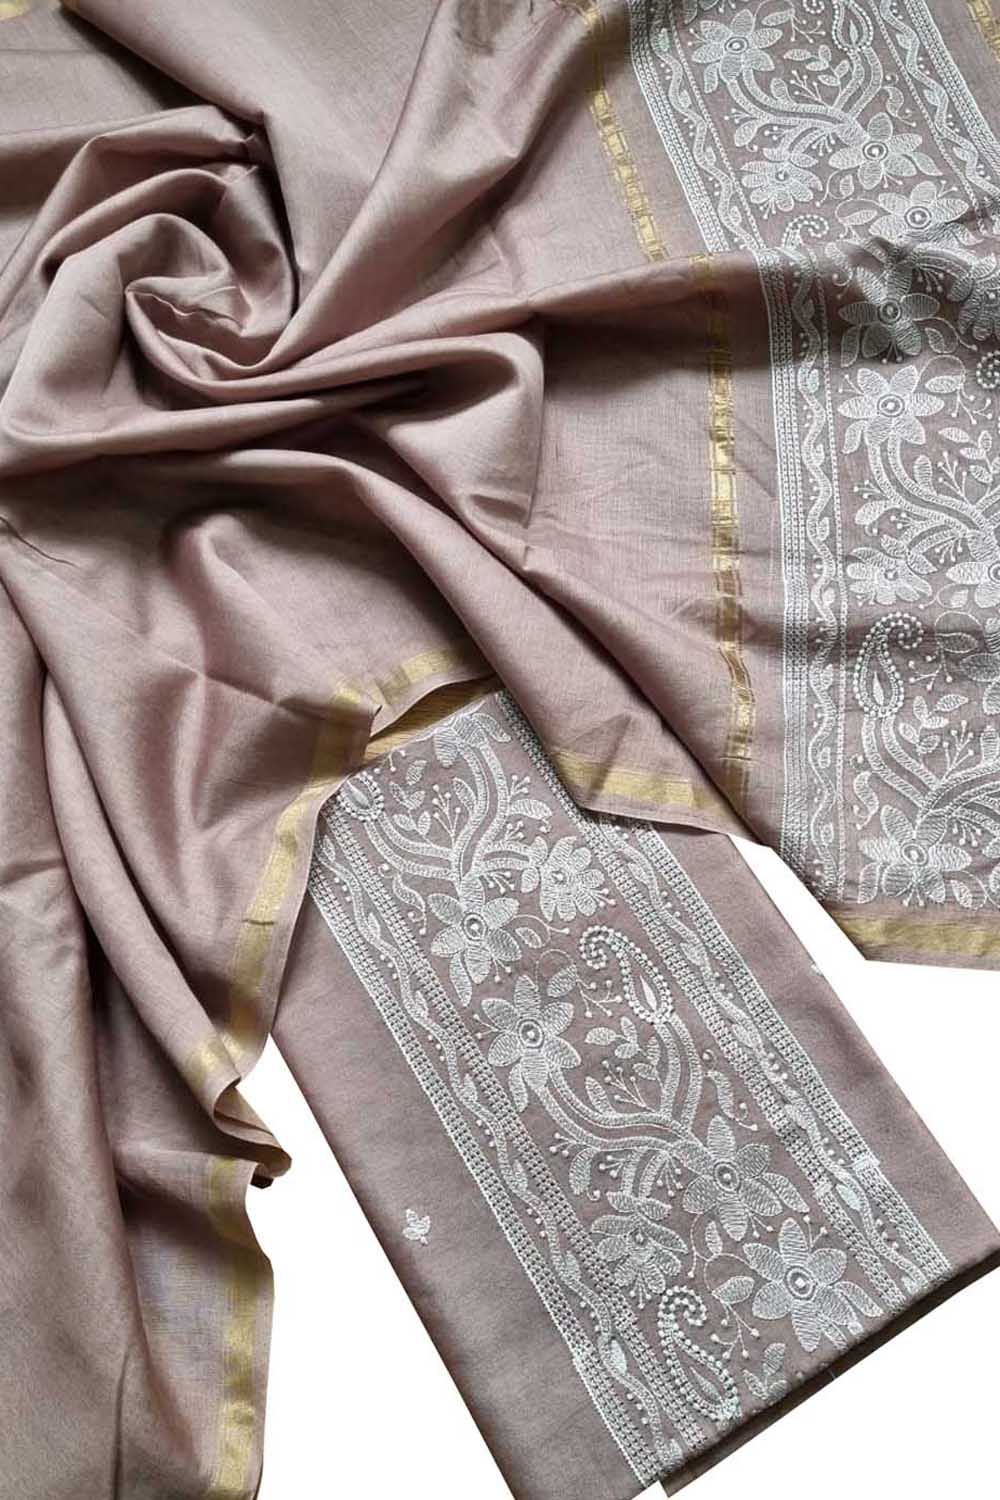 Pink Banarasi Embroidered Chanderi Silk Three Piece Unstitched Suit Set - Luxurion World